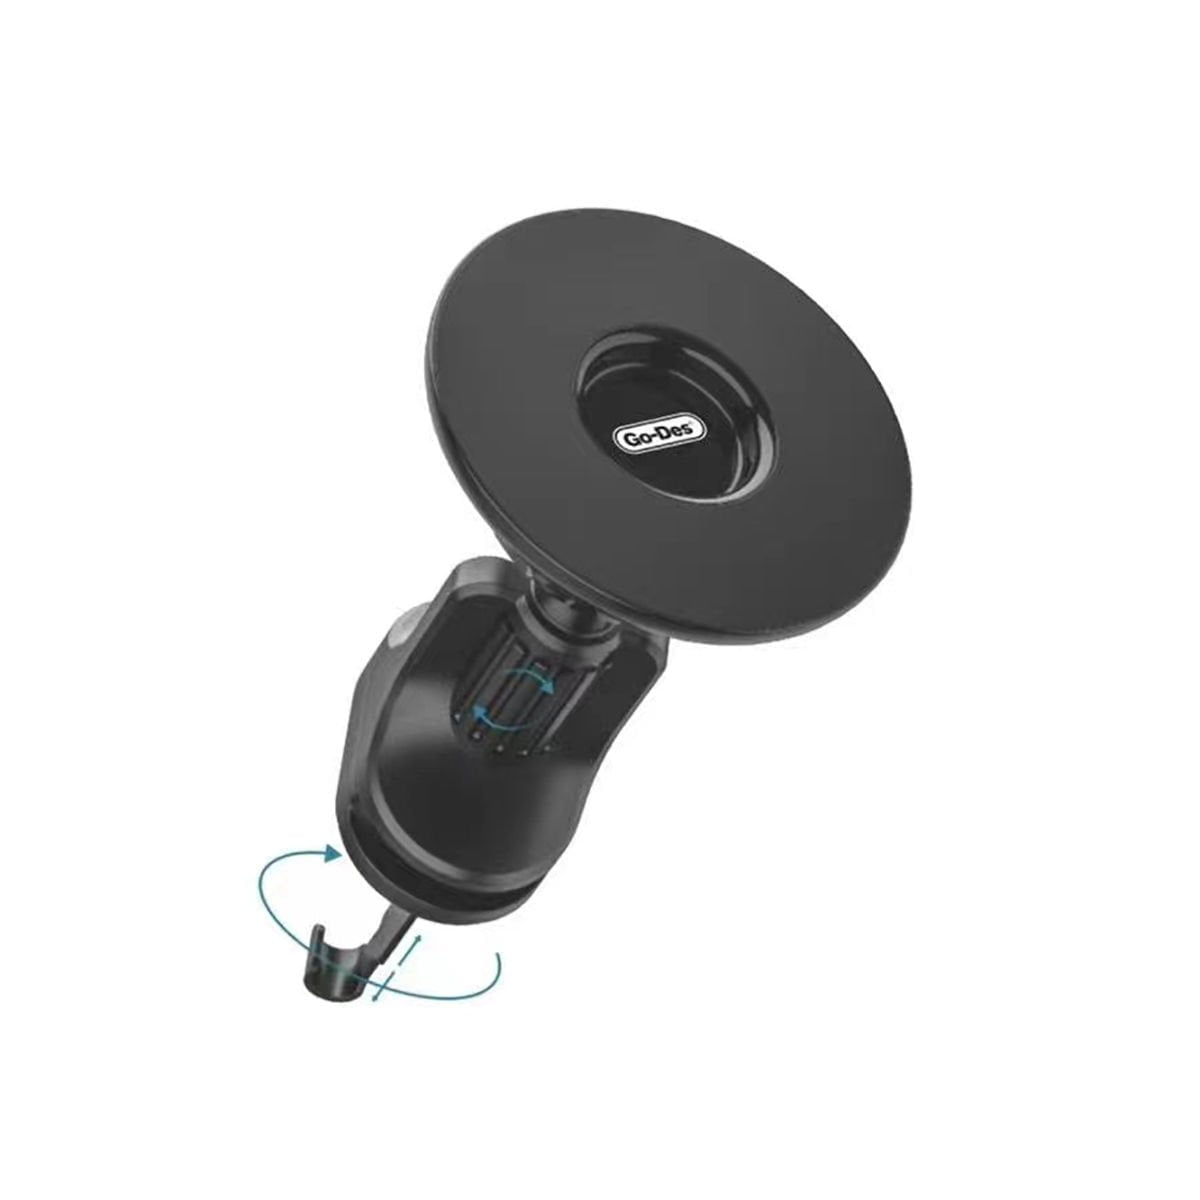 Go Des Super Magnetic 360 Degree Swivel Head Phone Holder Ventilation Design